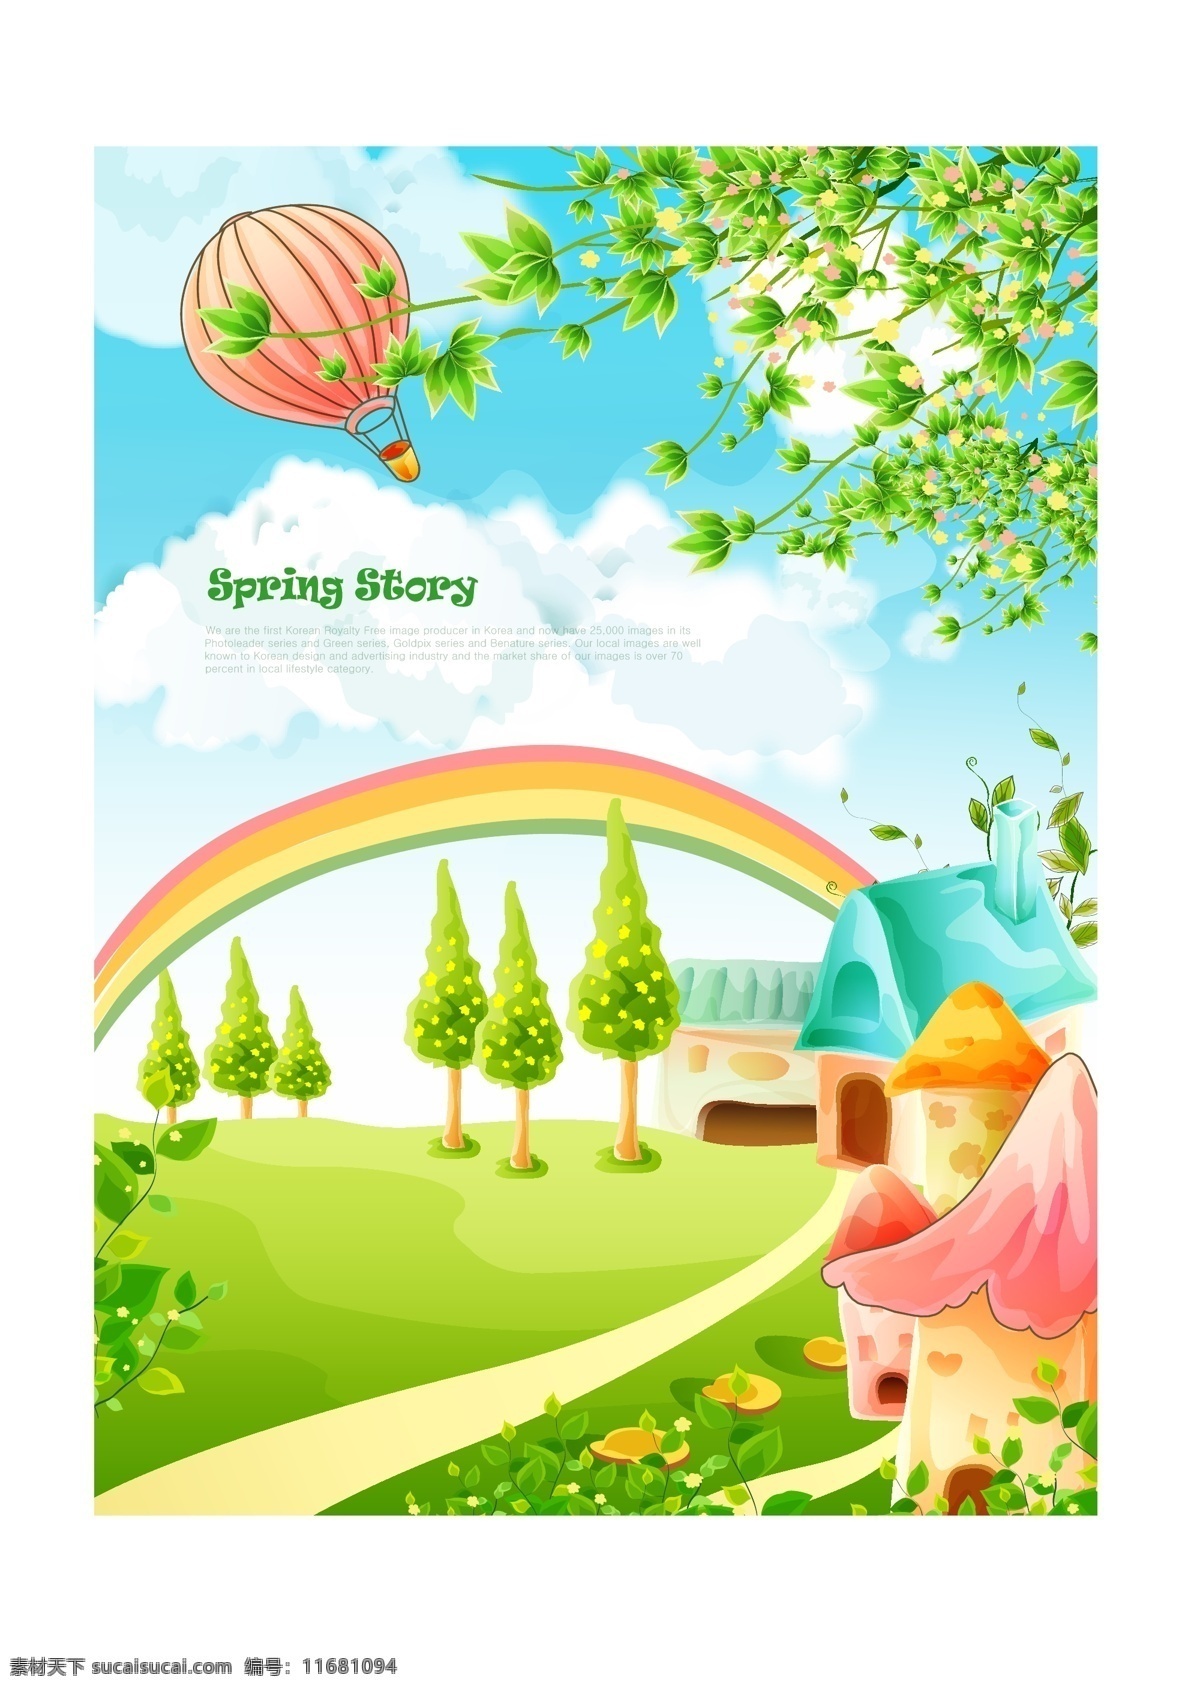 韩式 可爱 卡通 春天 彩虹 插画 房子 风景 花 花瓣 花朵 矢量 植物 热气球 叶子 绿叶 小屋子 海报 蓝天白云 天空 其他海报设计